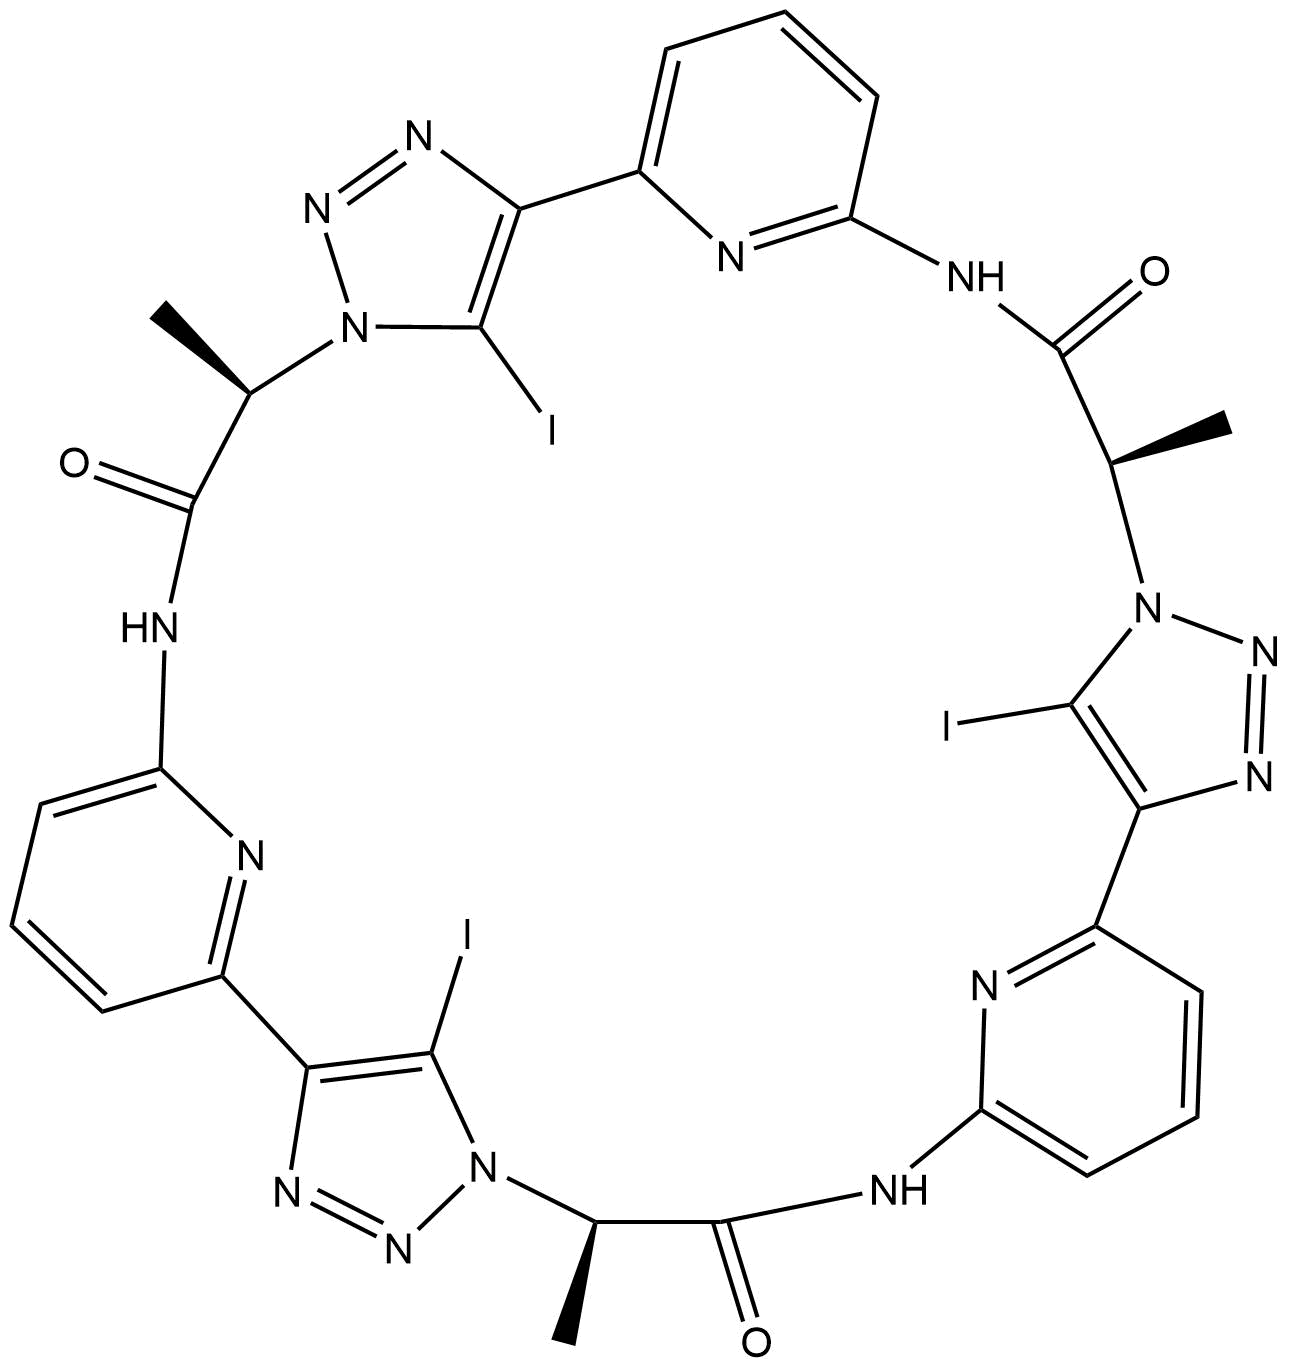 Pseudocyclopeptide 1 i